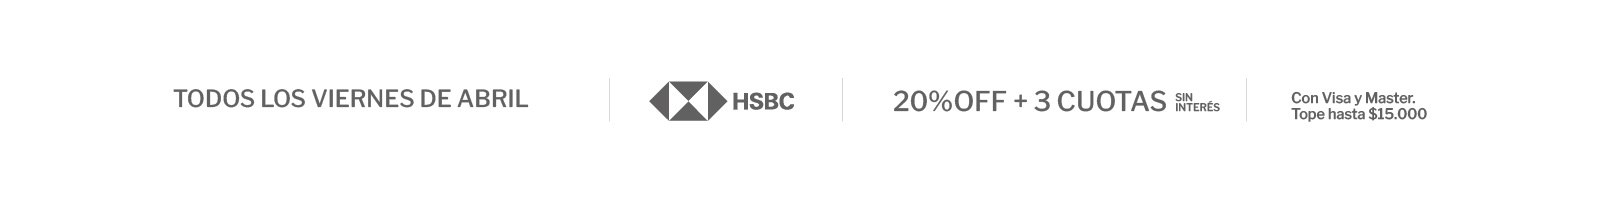 Promoción especial con Banco HSBC